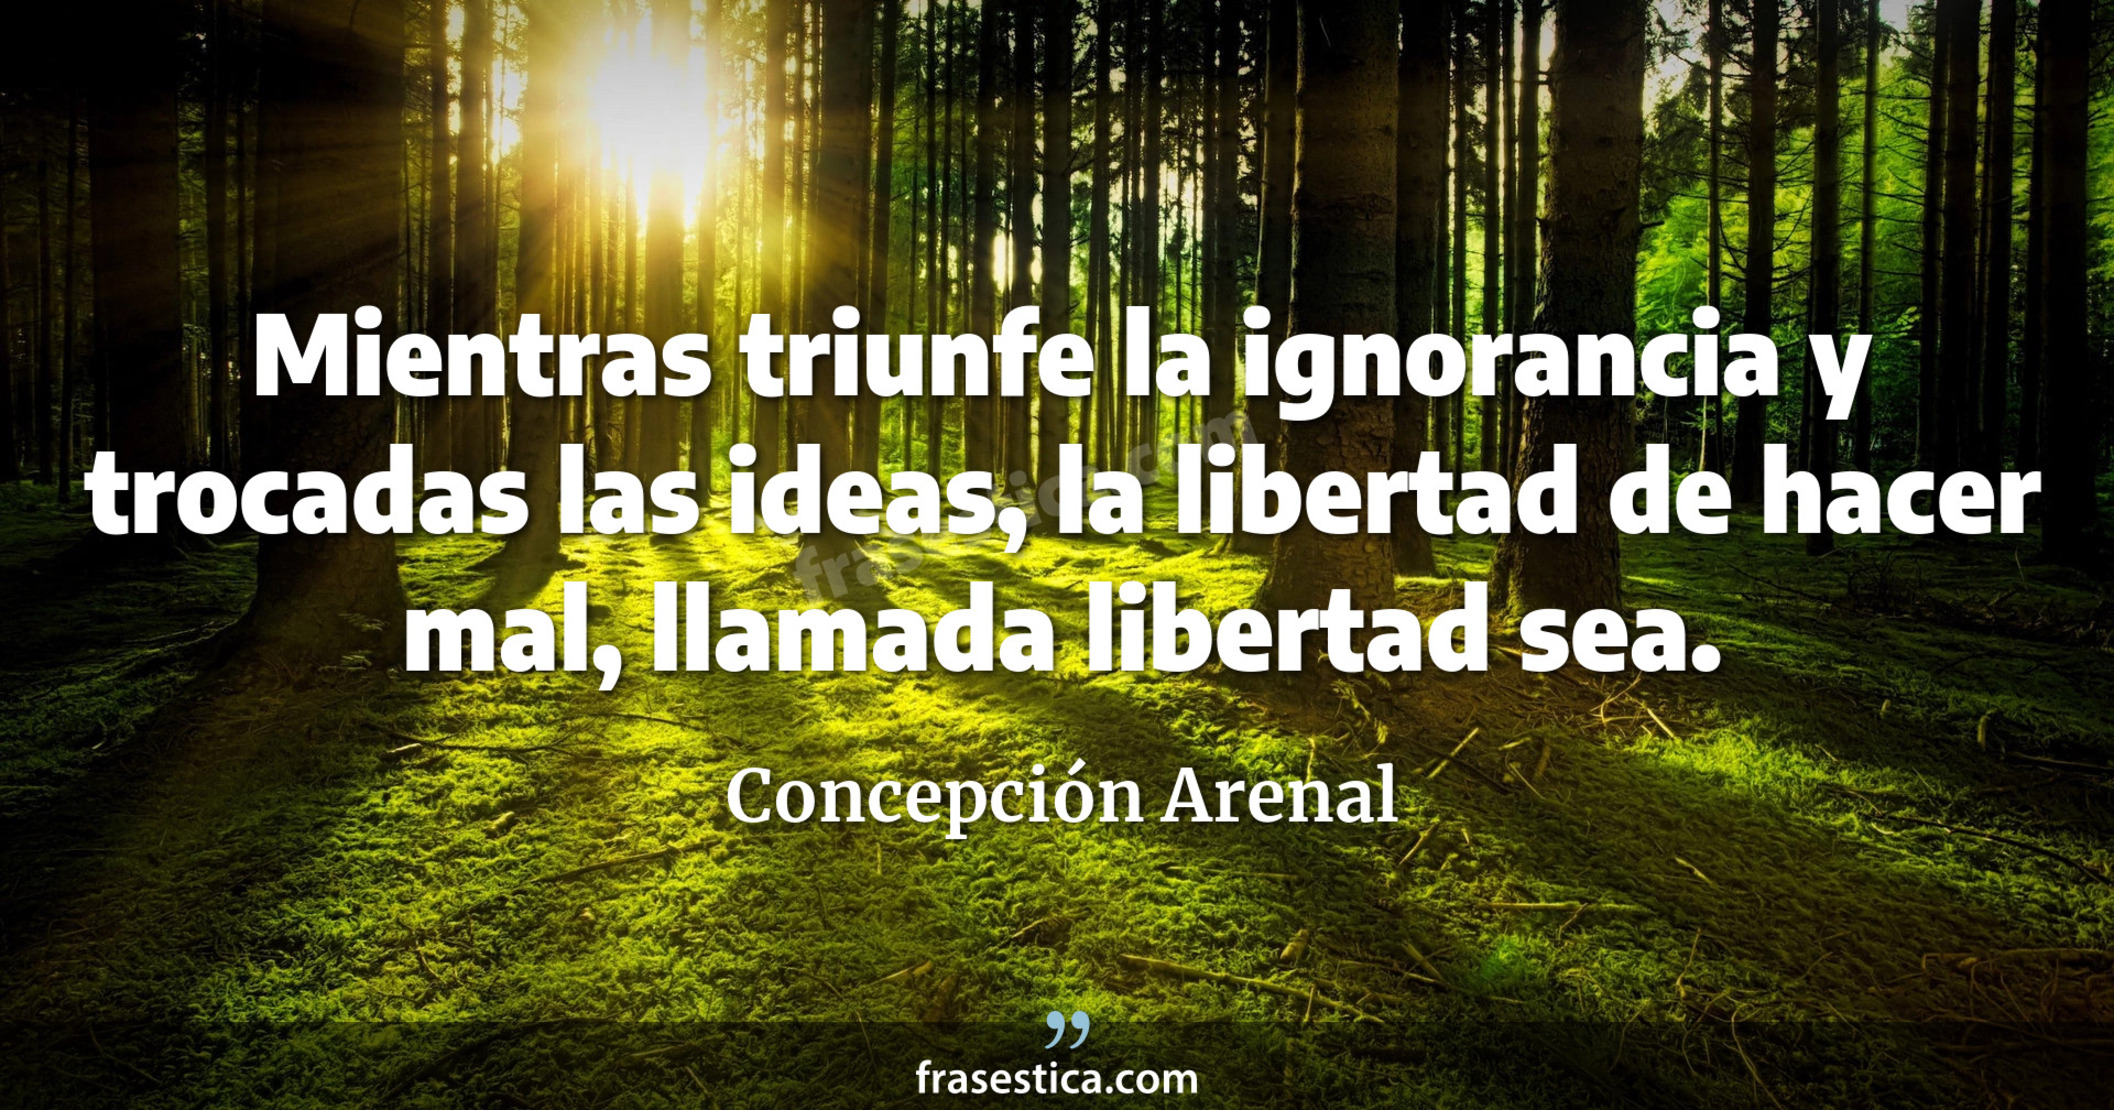 Mientras triunfe la ignorancia y trocadas las ideas, la libertad de hacer mal, llamada libertad sea. - Concepción Arenal